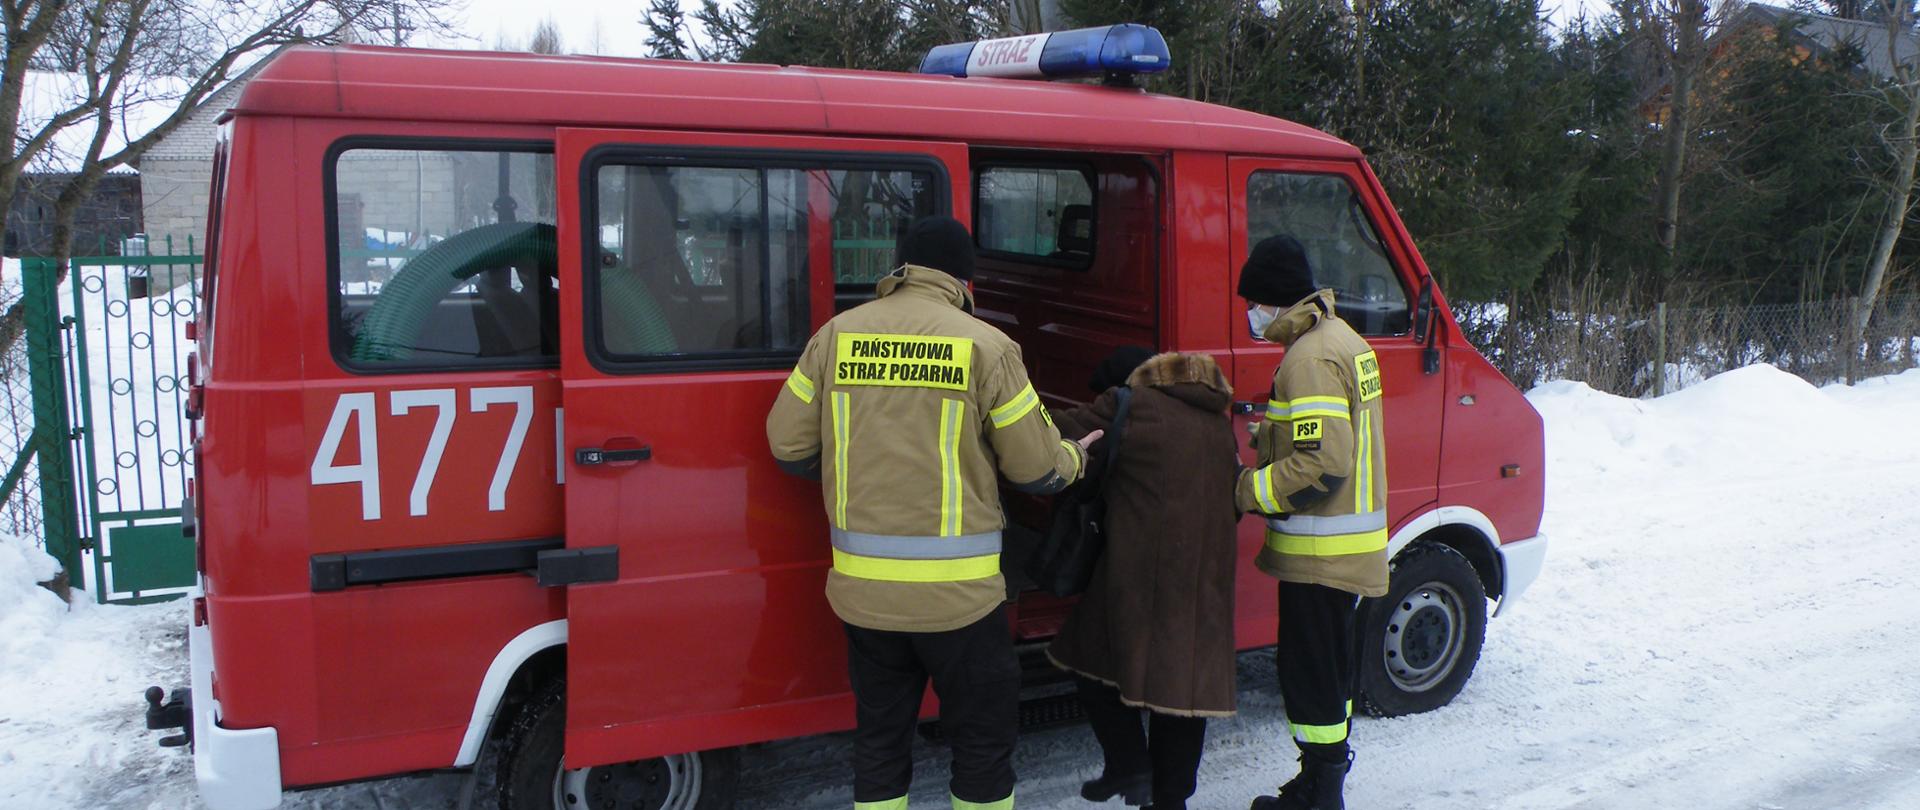 czerwony samochód pożarniczy dowozi osoby starsze na szczepienie